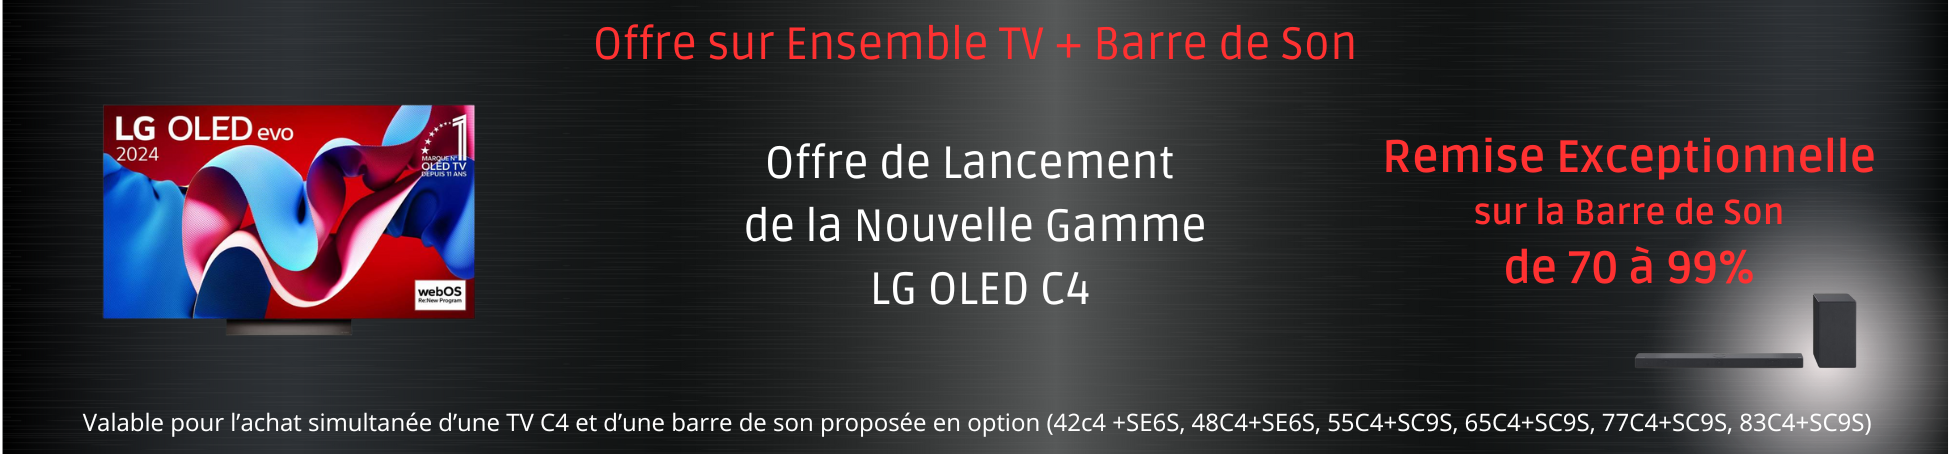 Offre de Lancement nouvelle gamme Oled LG C4